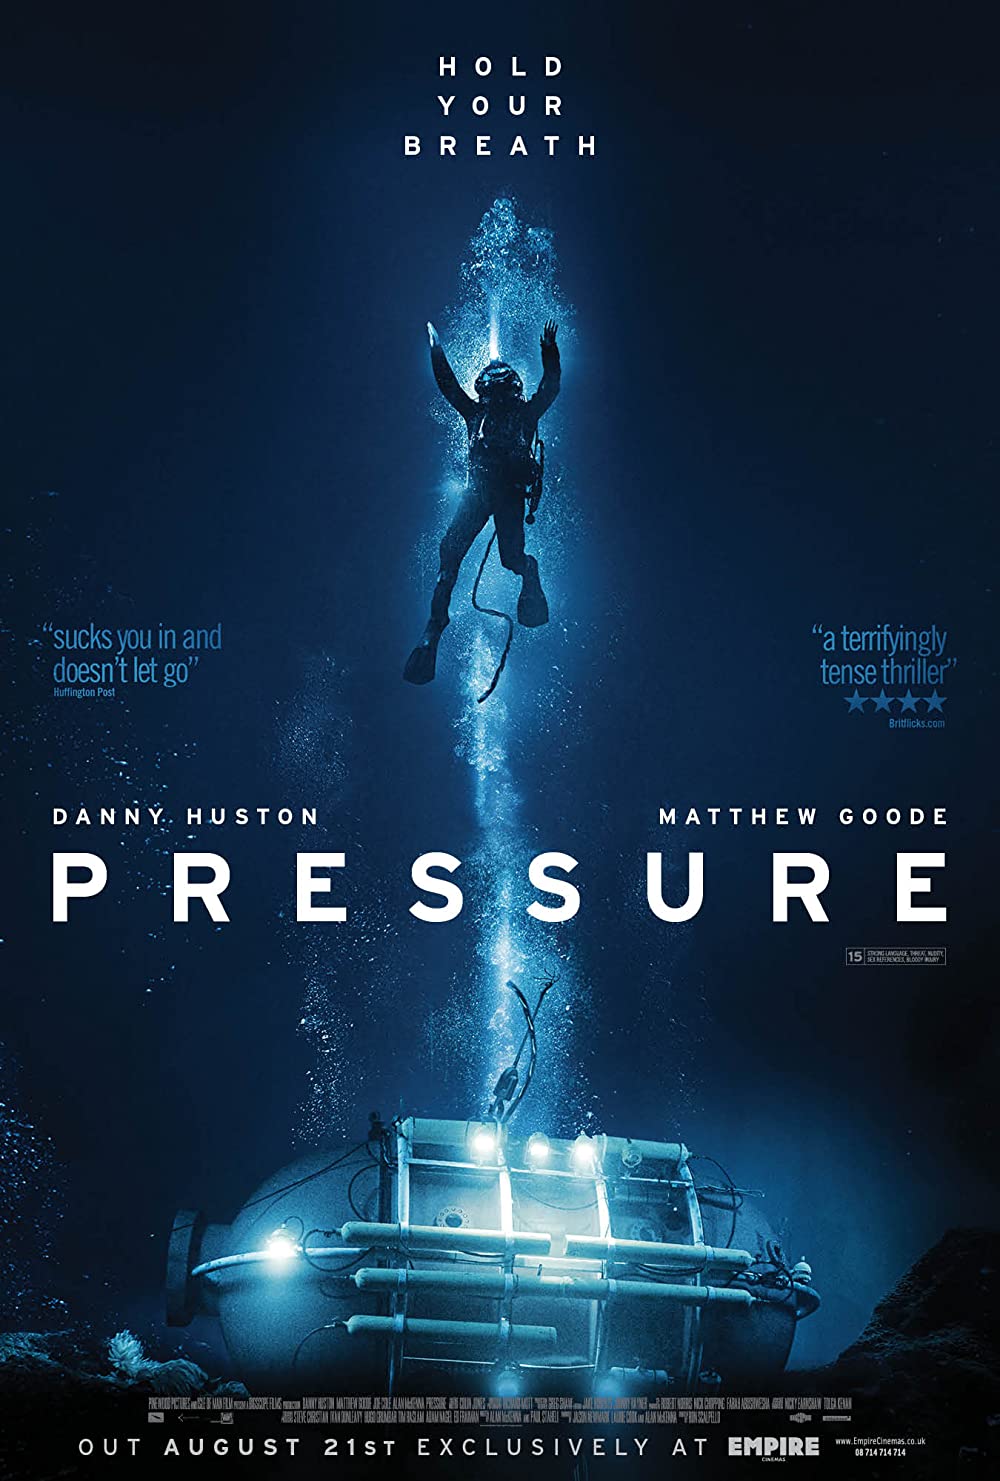 Filmbeschreibung zu Pressure (OV)